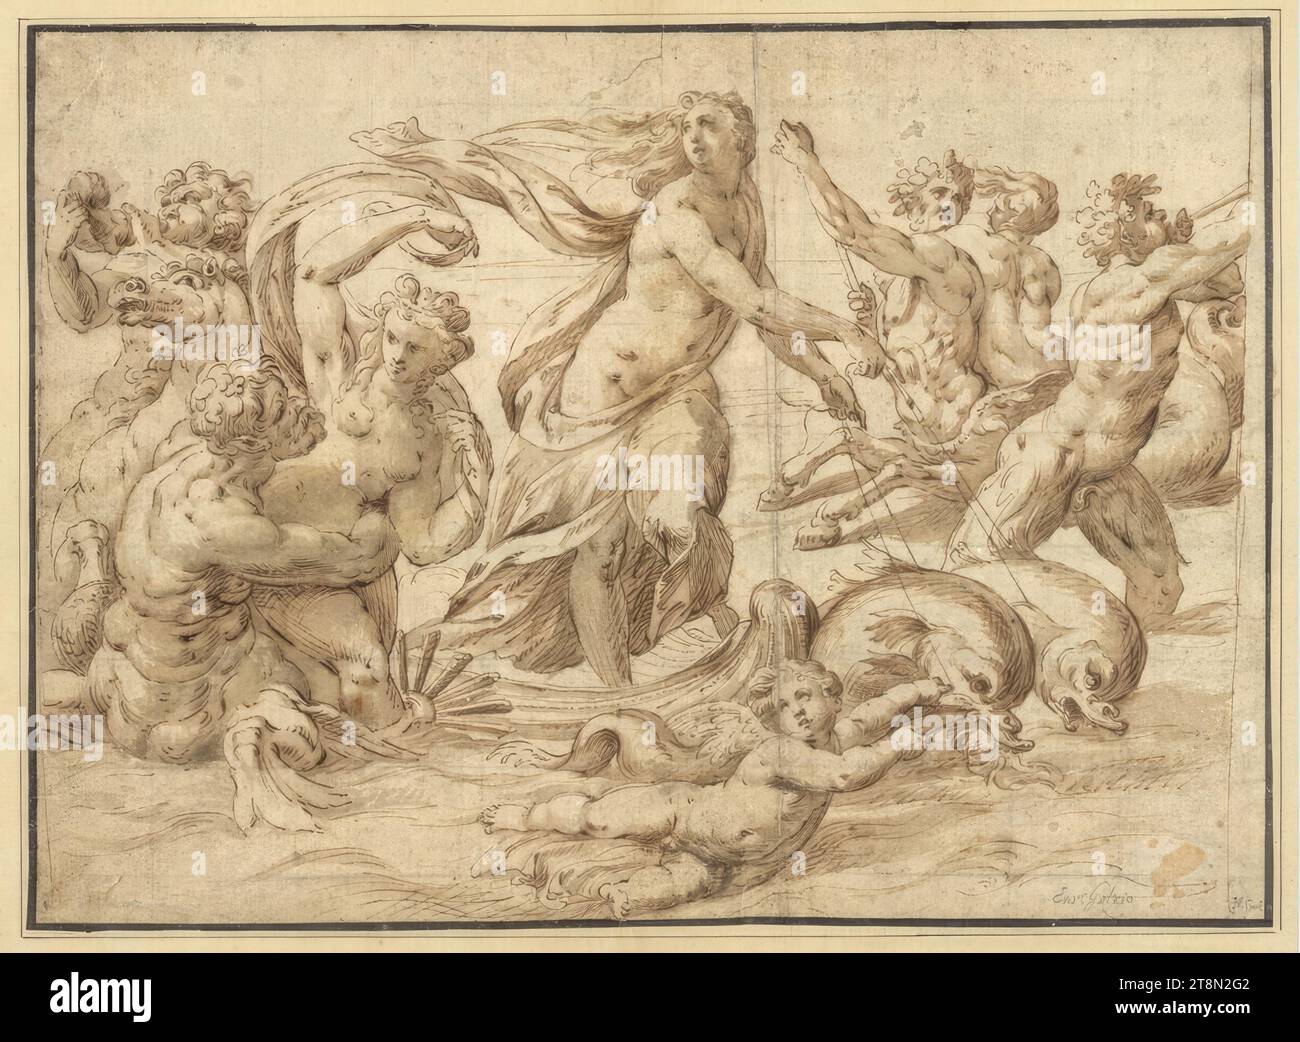 Il trionfo di Galathea, Jan Speckaert (Bruxelles c. 1540 - c. 1577 Roma), disegno, penna e lavaggio marrone, linee a griglia, 25,3 x 34,9 cm, l. e duca Alberto di Sassonia Teschen, r. e 'Enr Gotzio'; 'H. oro Foto Stock